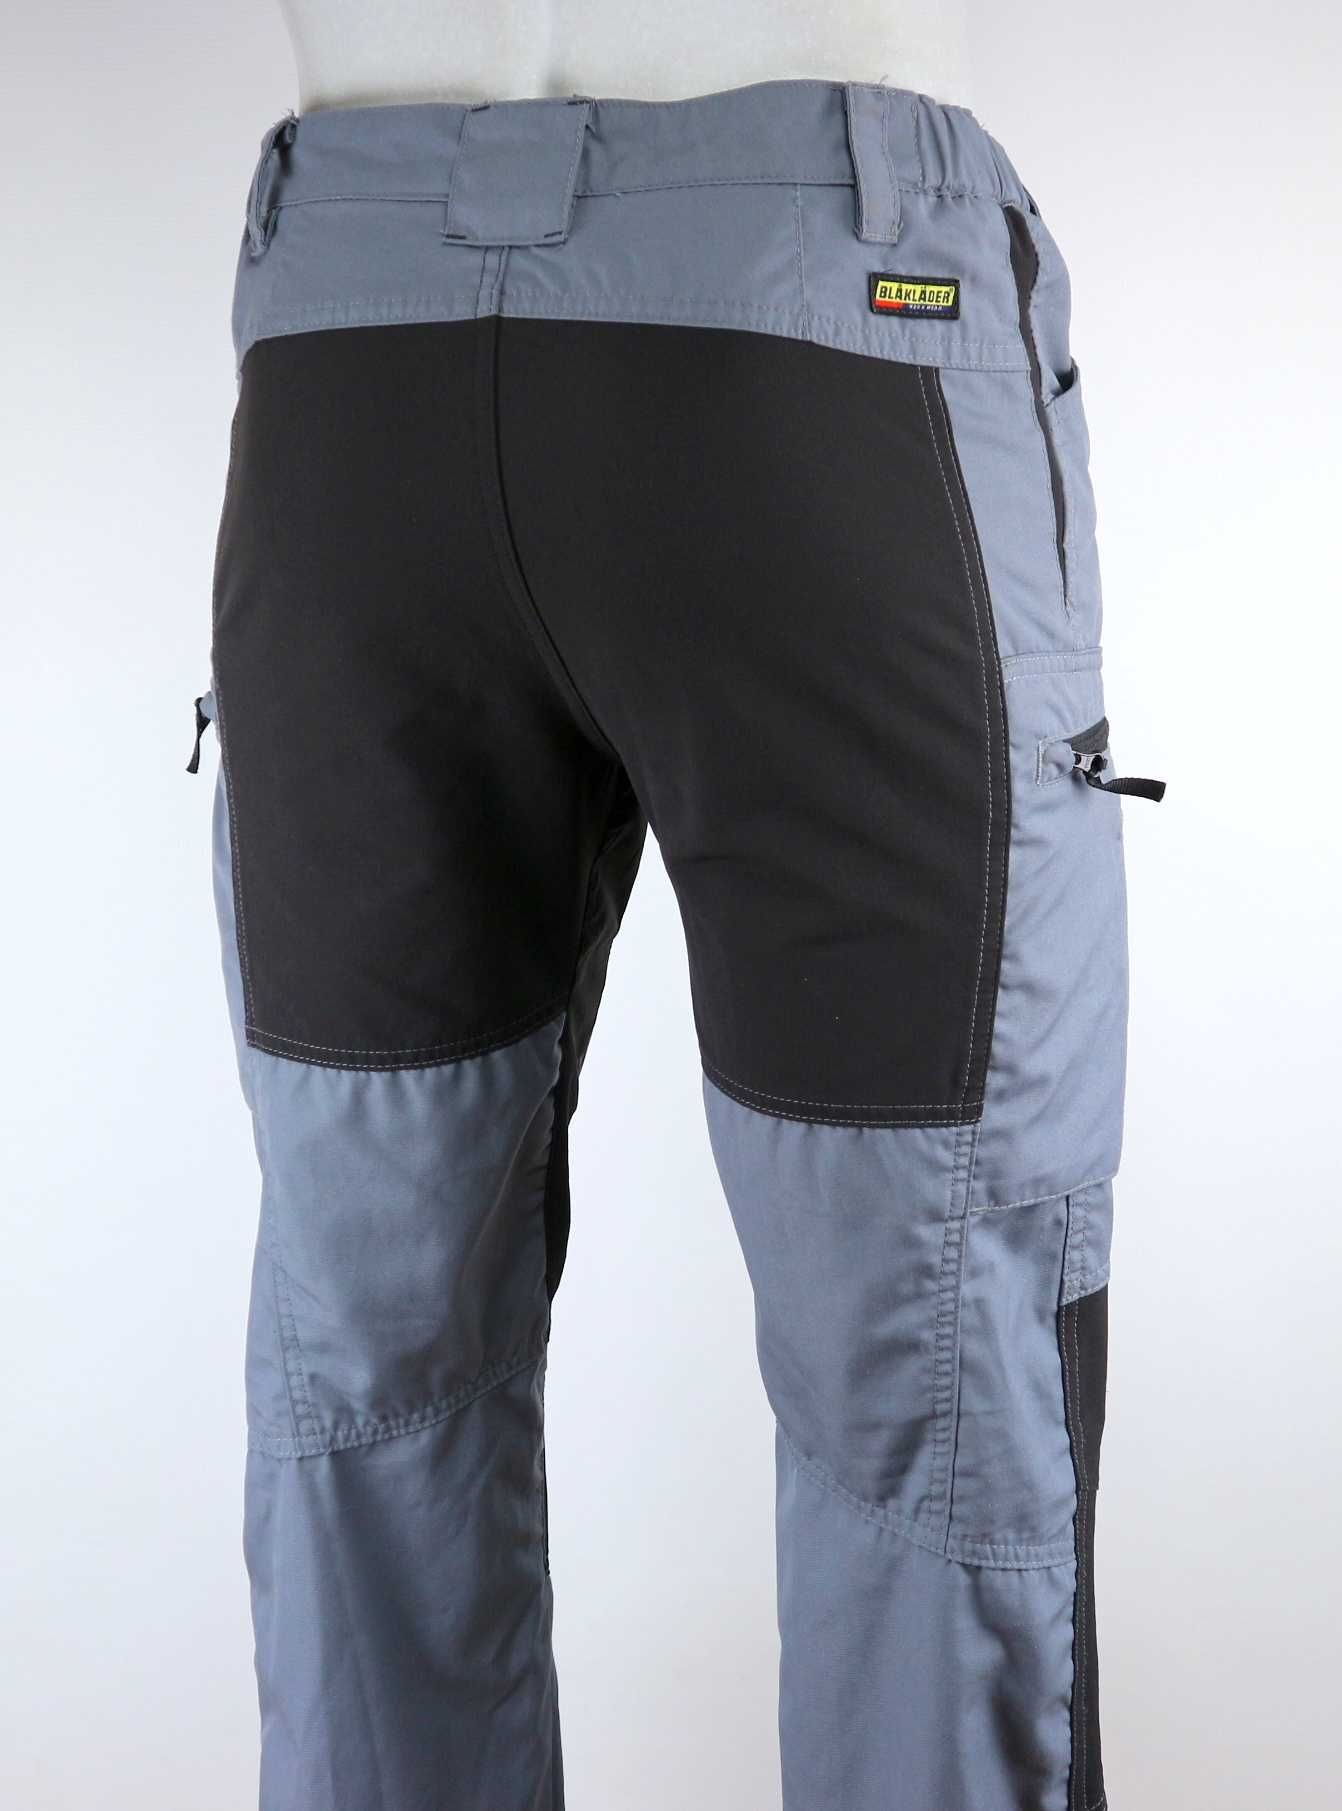 Blaklader damskie spodnie robocze ze stretchem 40 (L)